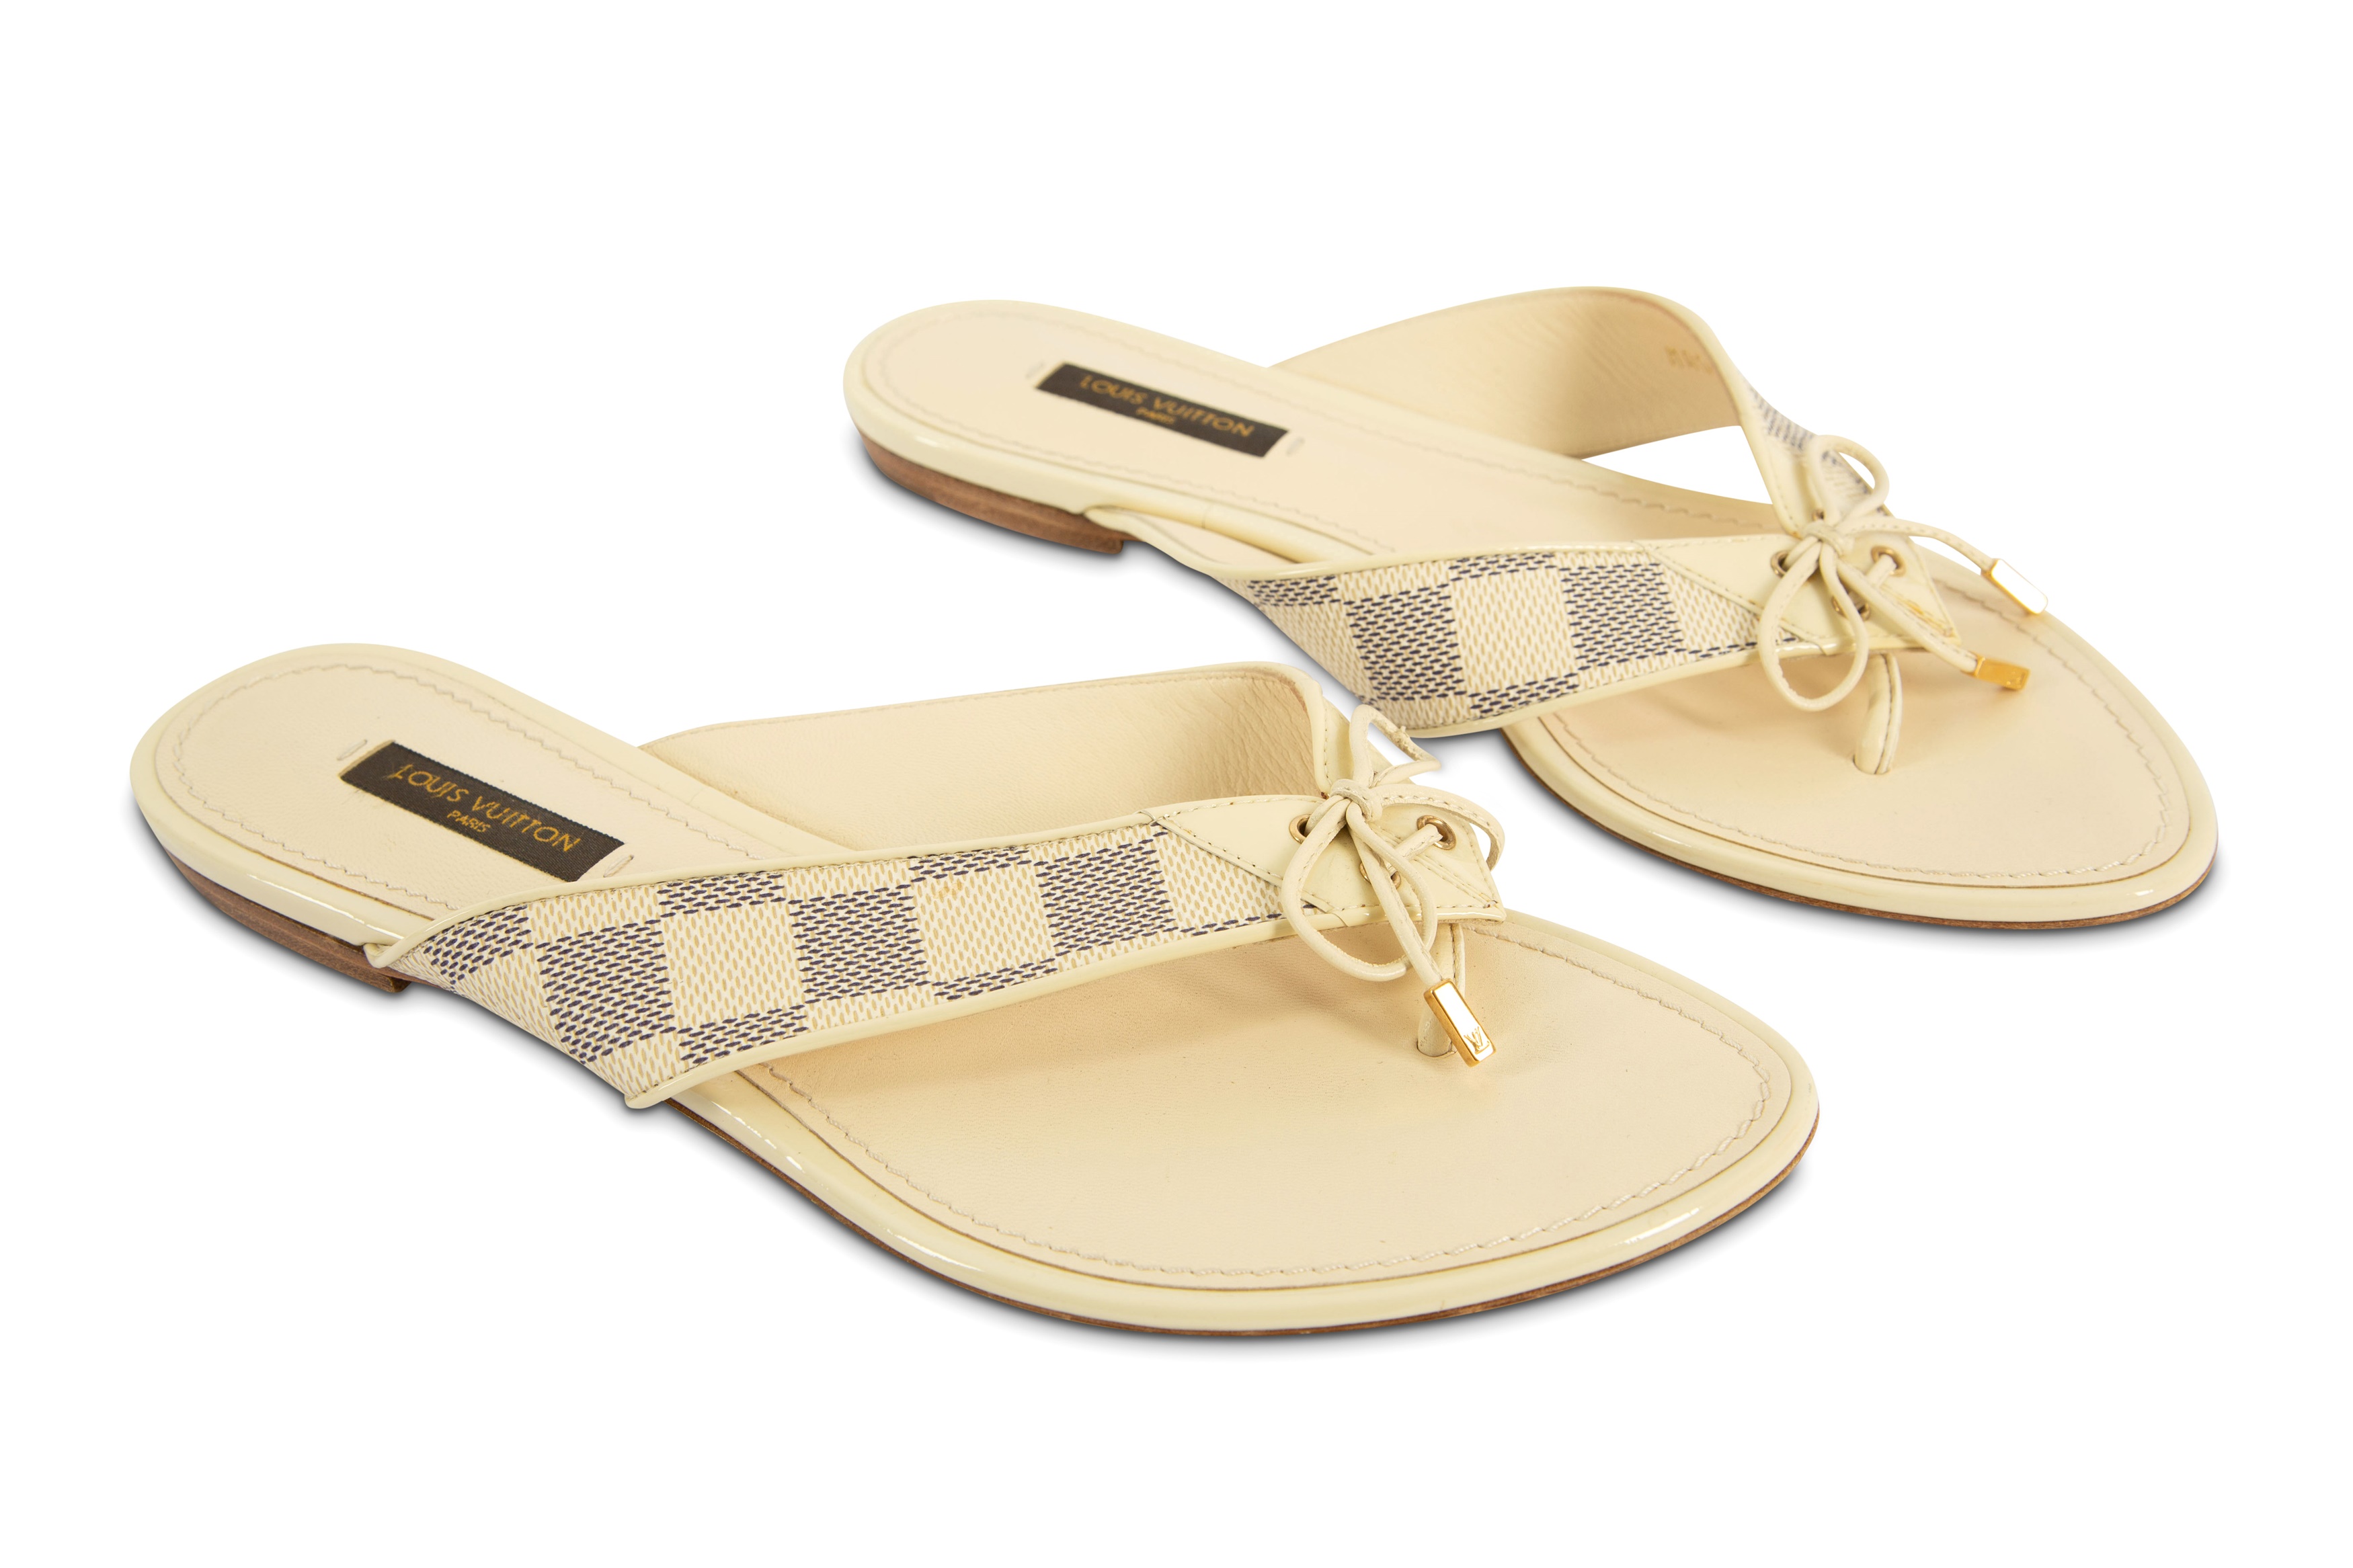 Louis Vuitton Damier Azur Thong Sandals - Neutrals Sandals, Shoes